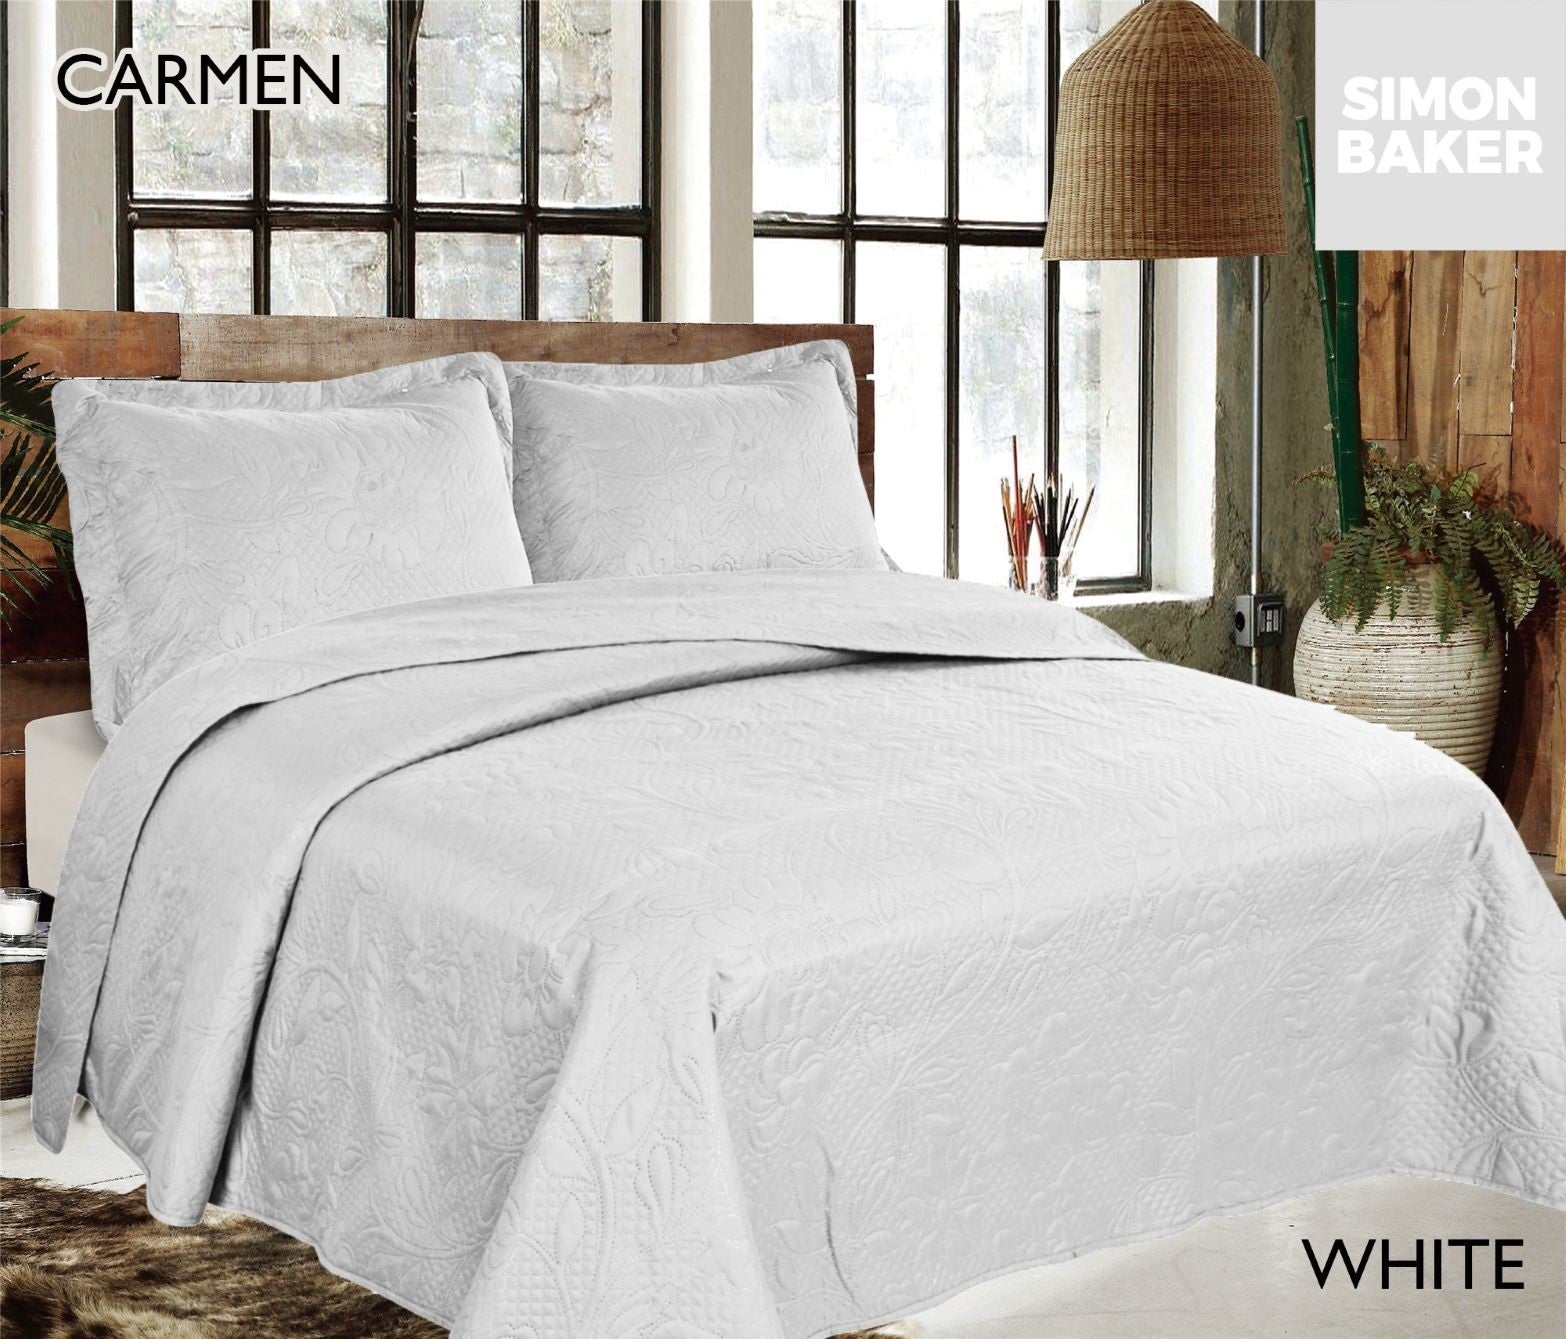 Simon Baker | Carmen Quilted Bedspread White (Various Sizes)